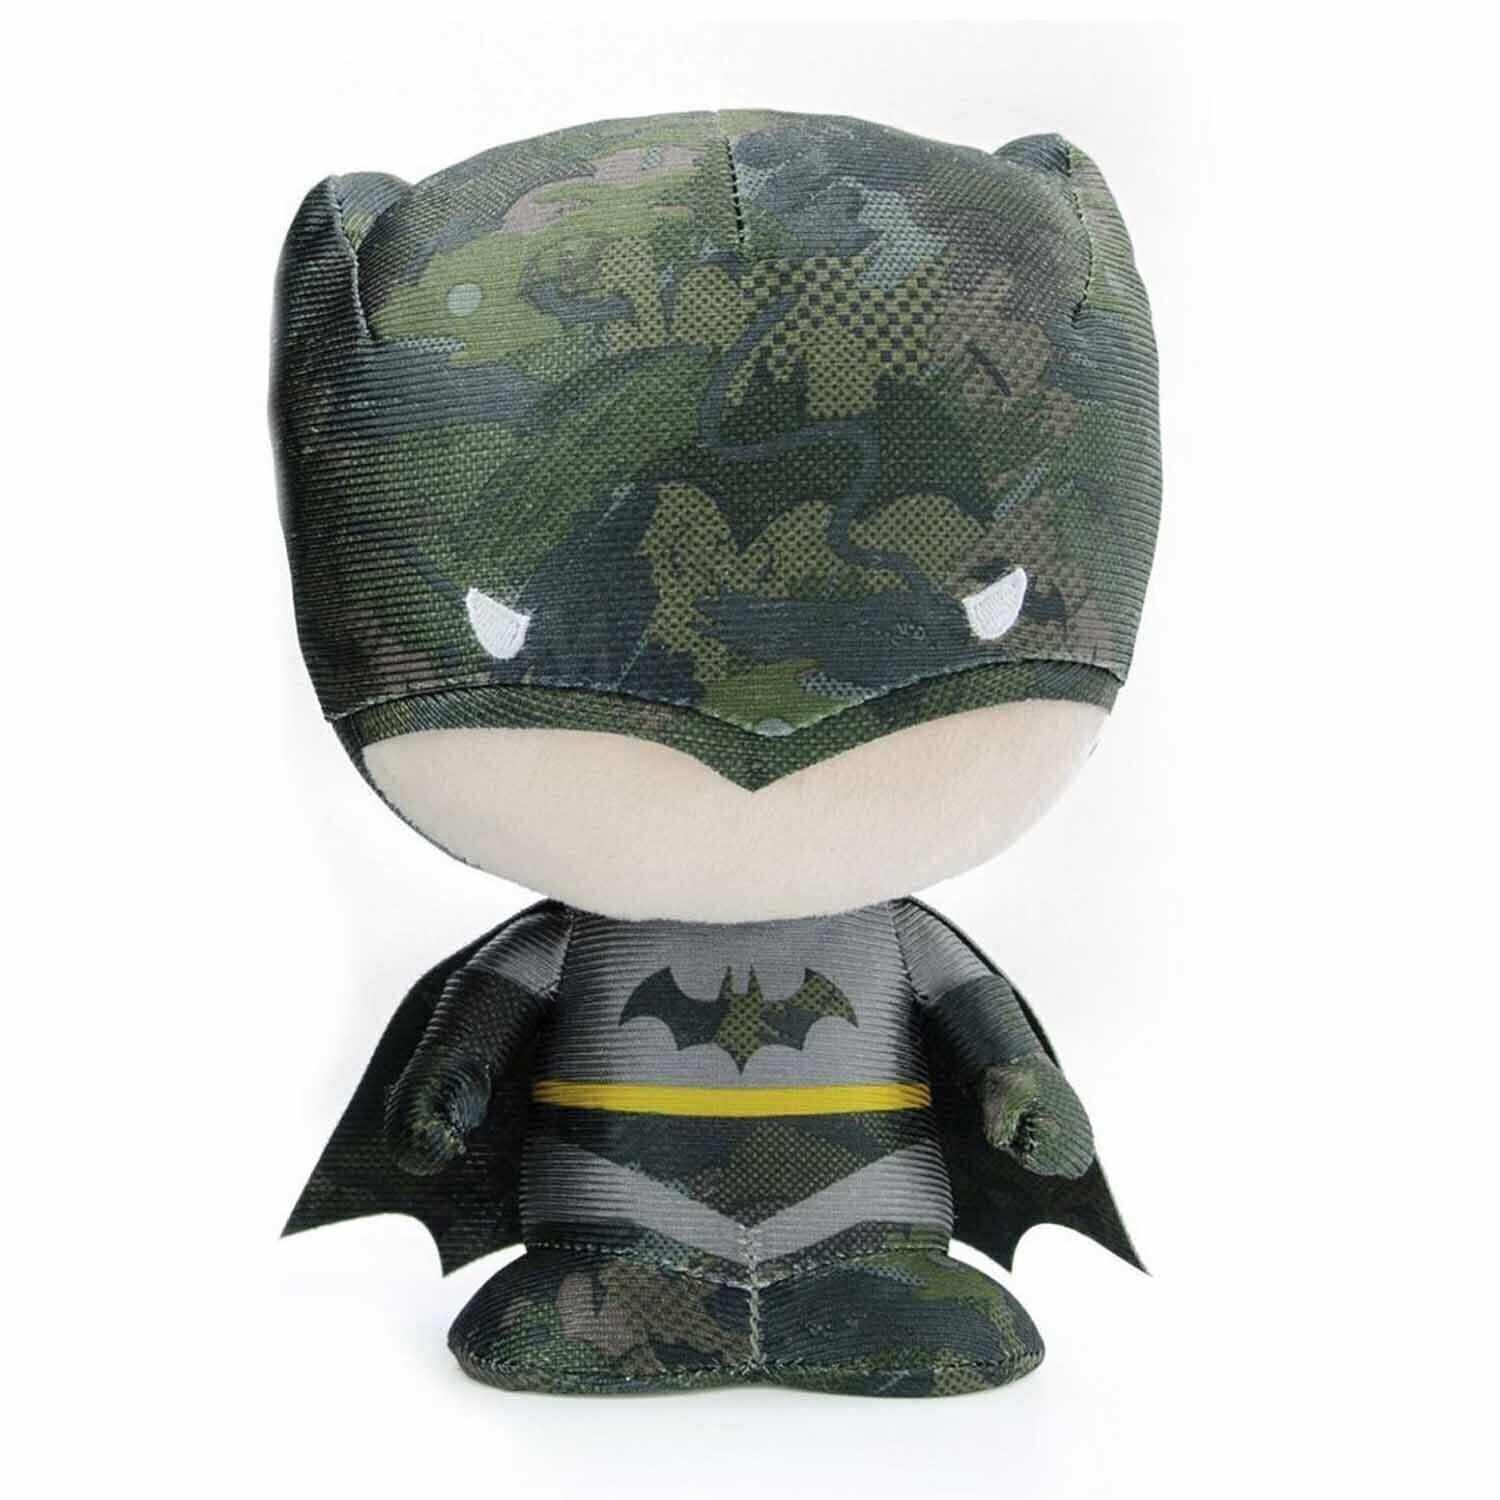 DC Comics 25cm DZNR Batman - Camo Plush Chibi Collectable Toy Figure